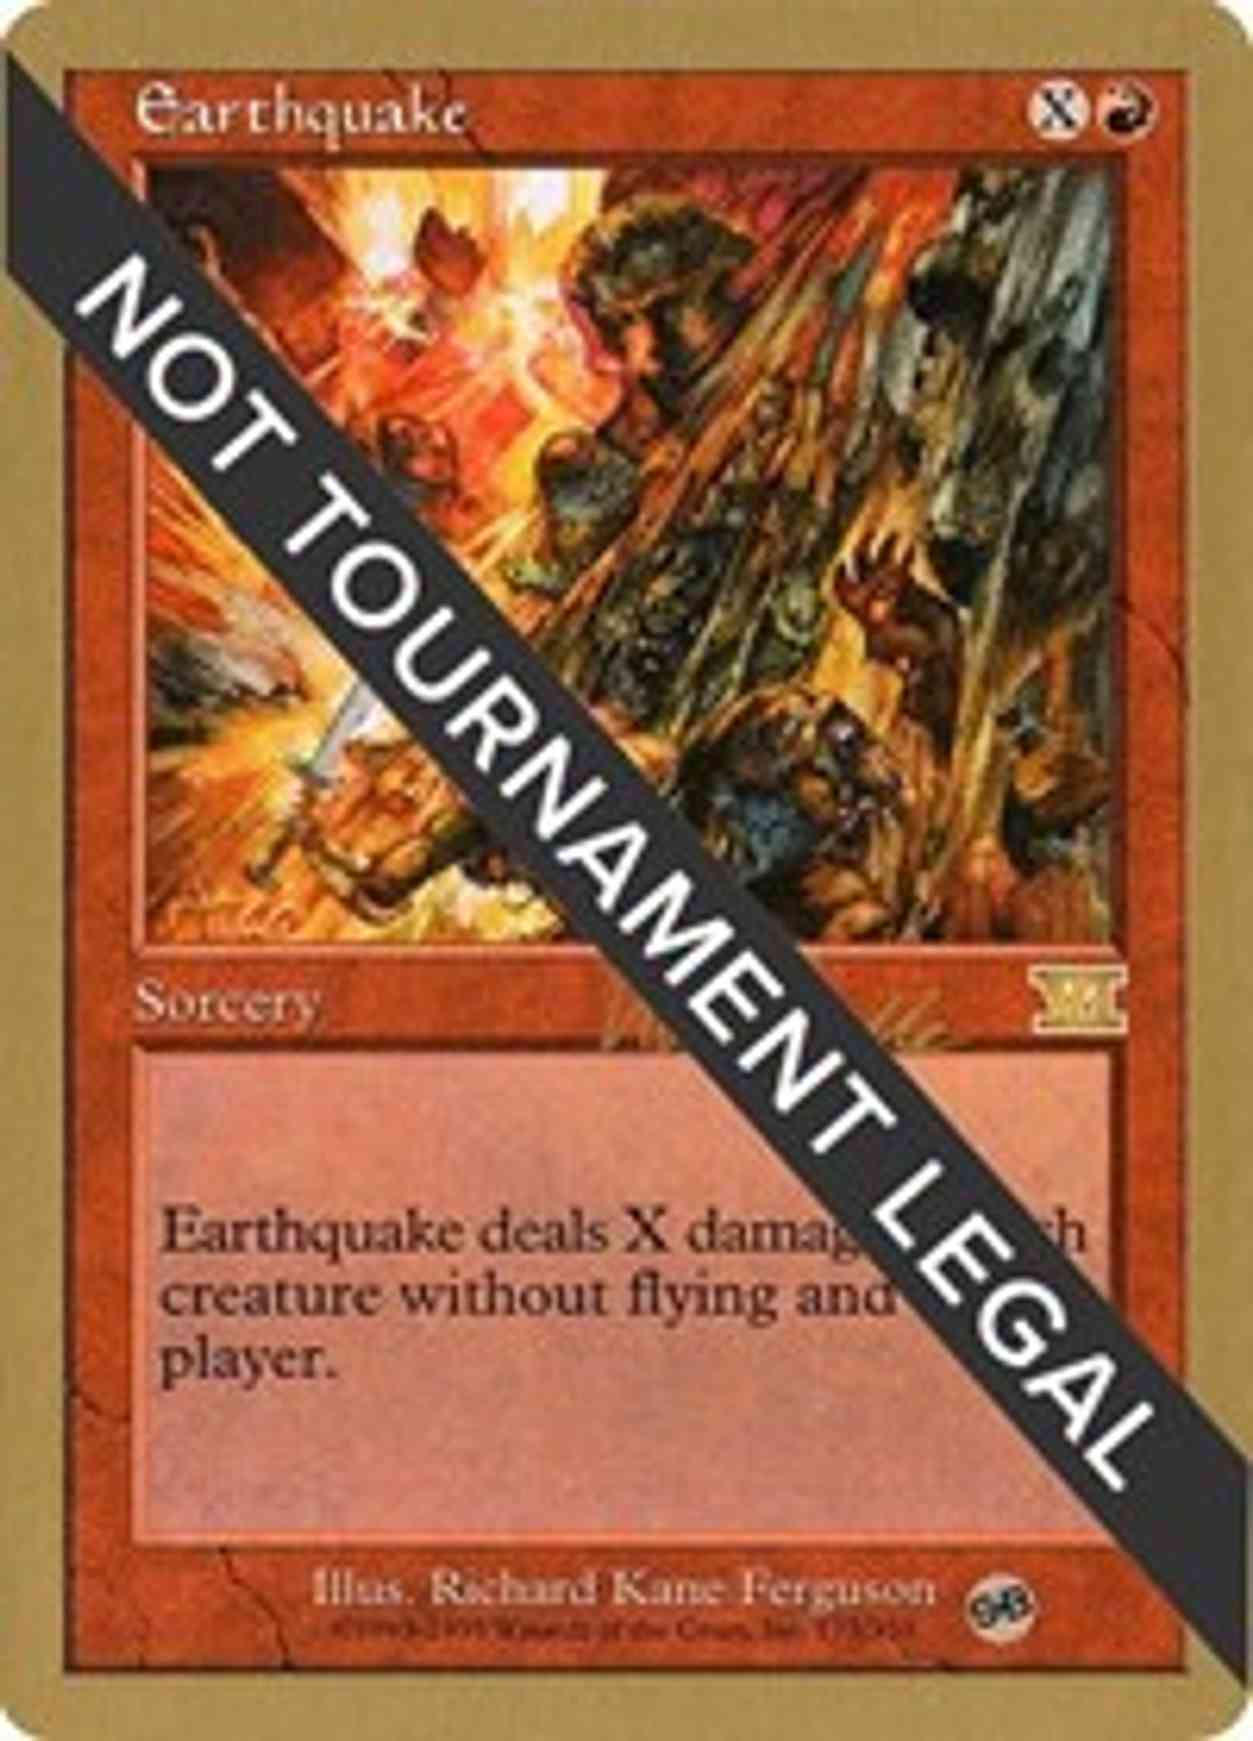 Earthquake - 1999 Kai Budde (6ED) (SB) magic card front